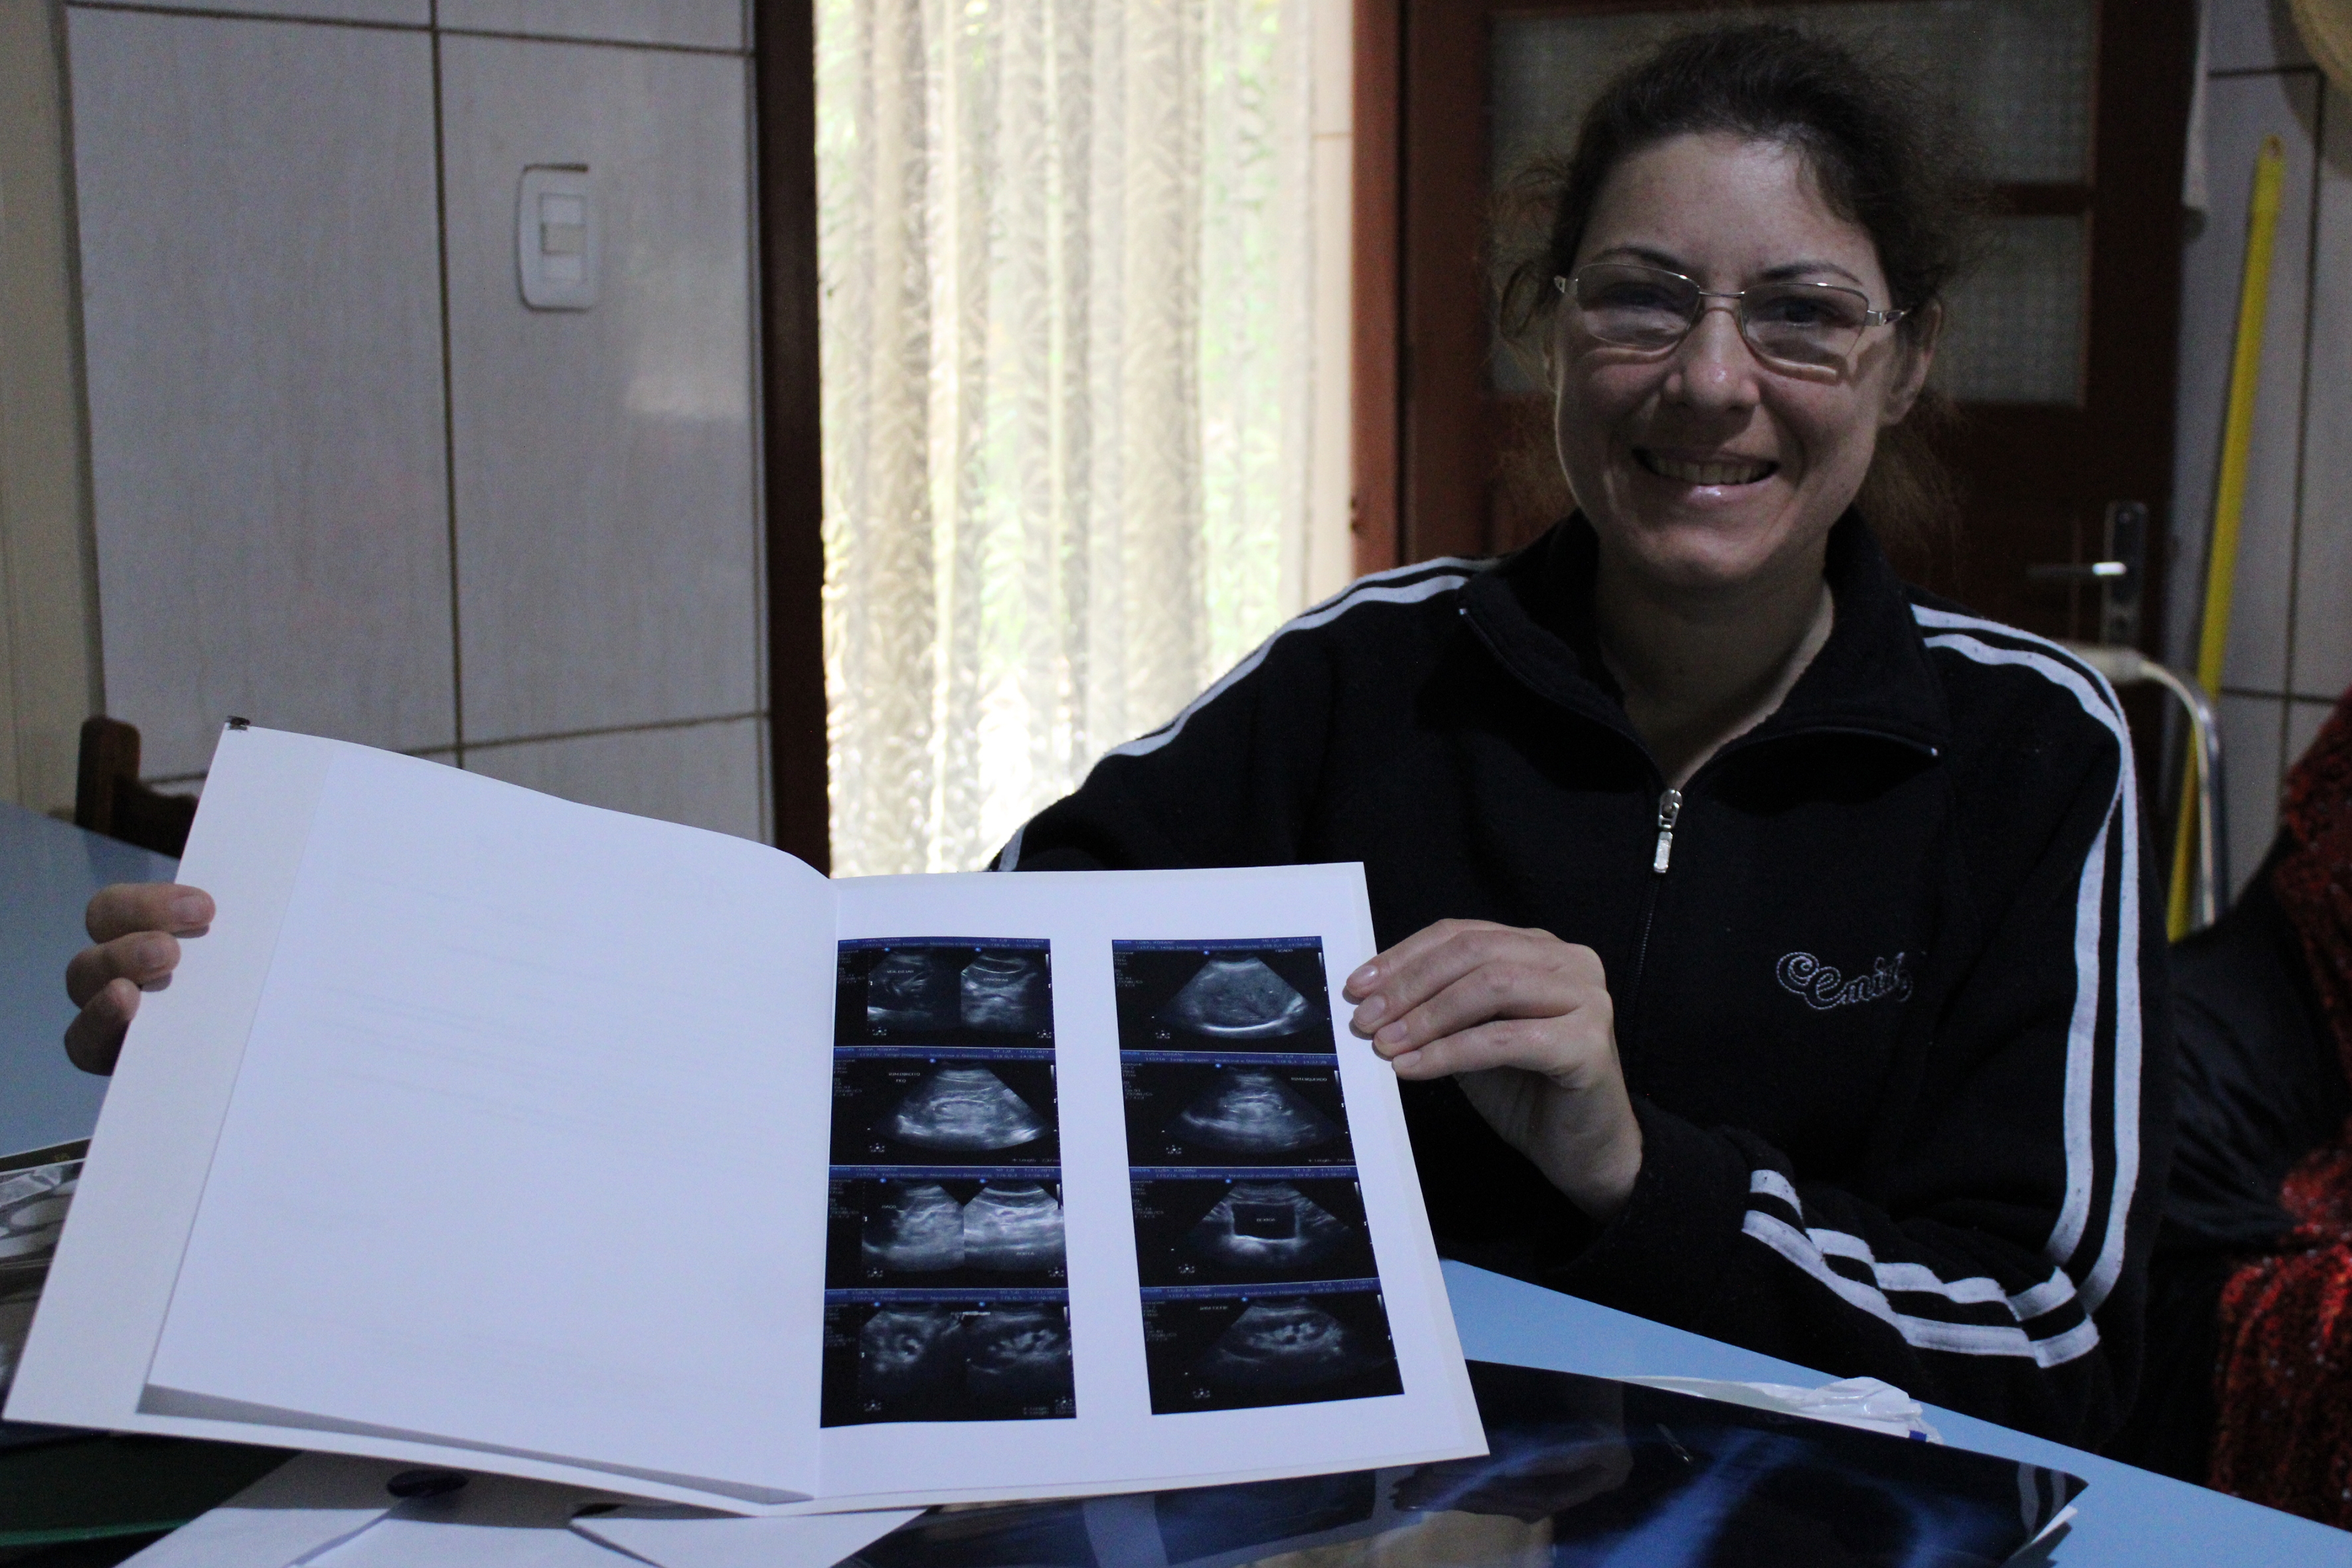 Rosane Lusa relembra sua trajetória de exames e consultas antes e após o transplante de rim. - Gabriela Fiorio